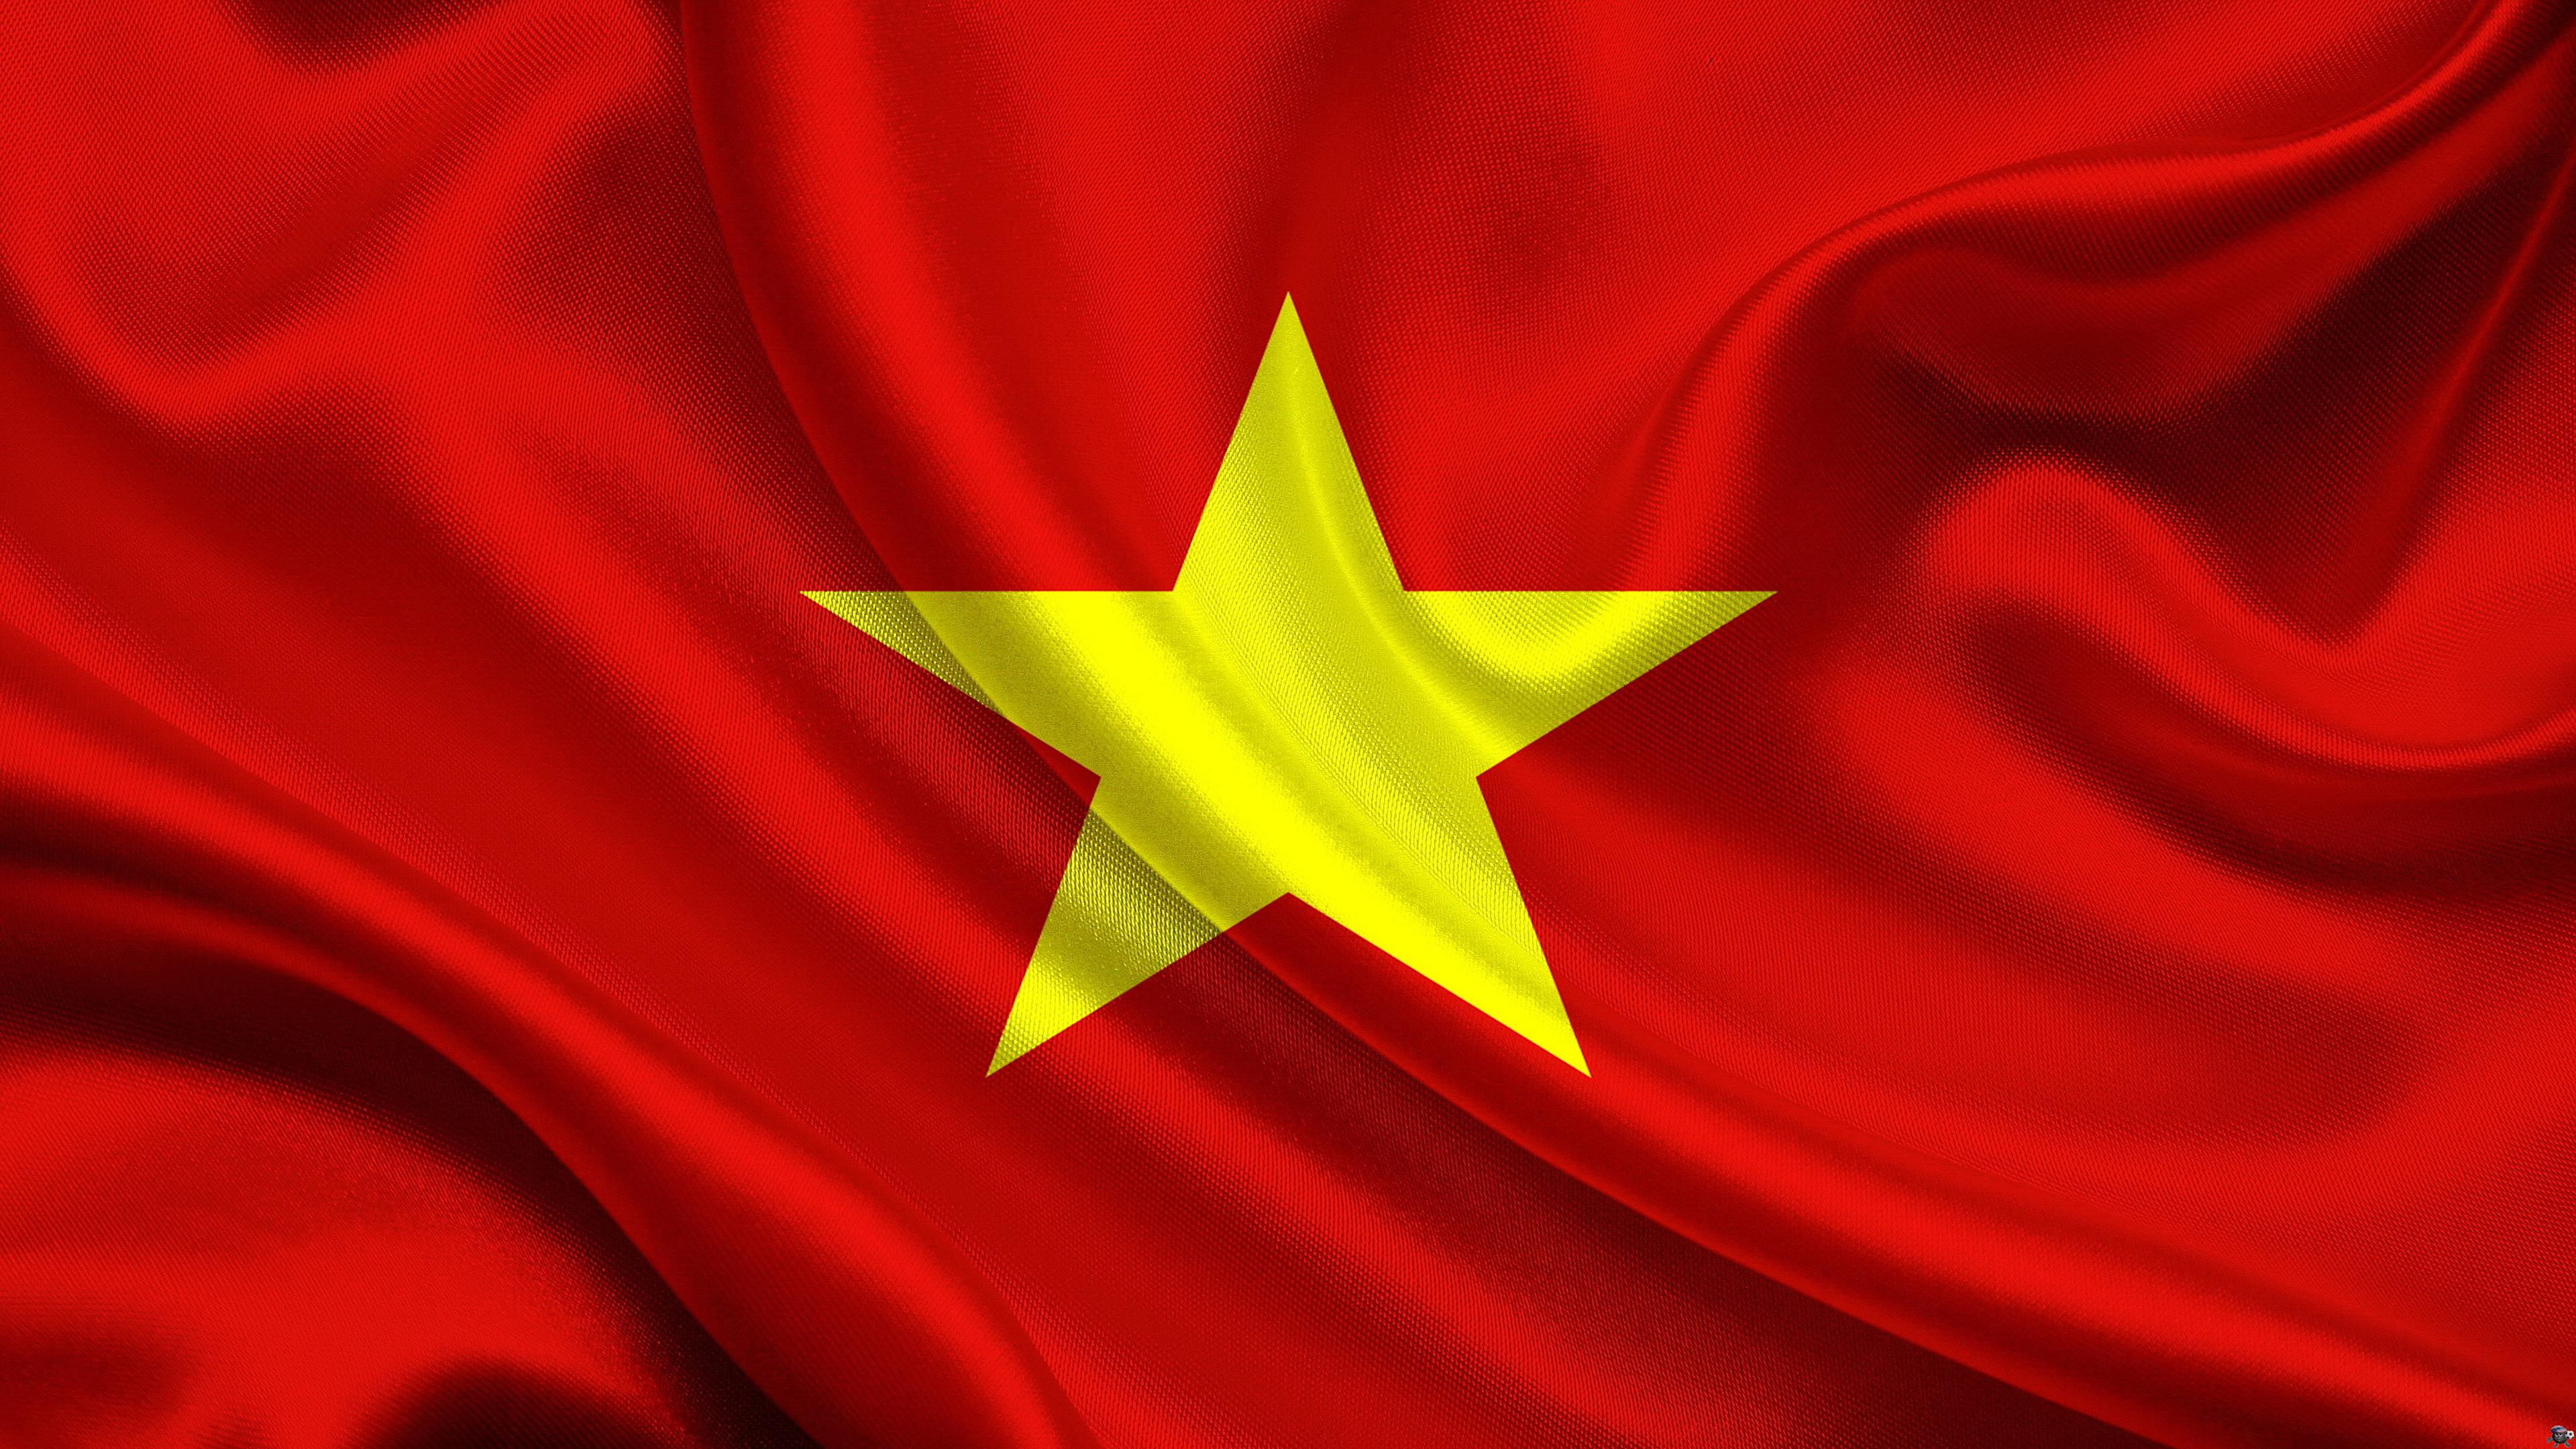 Tình Yêu Nước: Tình yêu nước là một giá trị cốt lõi của người Việt Nam. Đó là tình yêu thương, biết ơn và sự tự hào về đất nước, về dân tộc và về văn hóa của mình. Hãy cùng chia sẻ những câu chuyện về tình yêu nước, những nơi đặc biệt có giá trị lịch sử, văn hóa và thiên nhiên, và lý do vì sao chúng ta nên yêu quý và bảo vệ chúng.